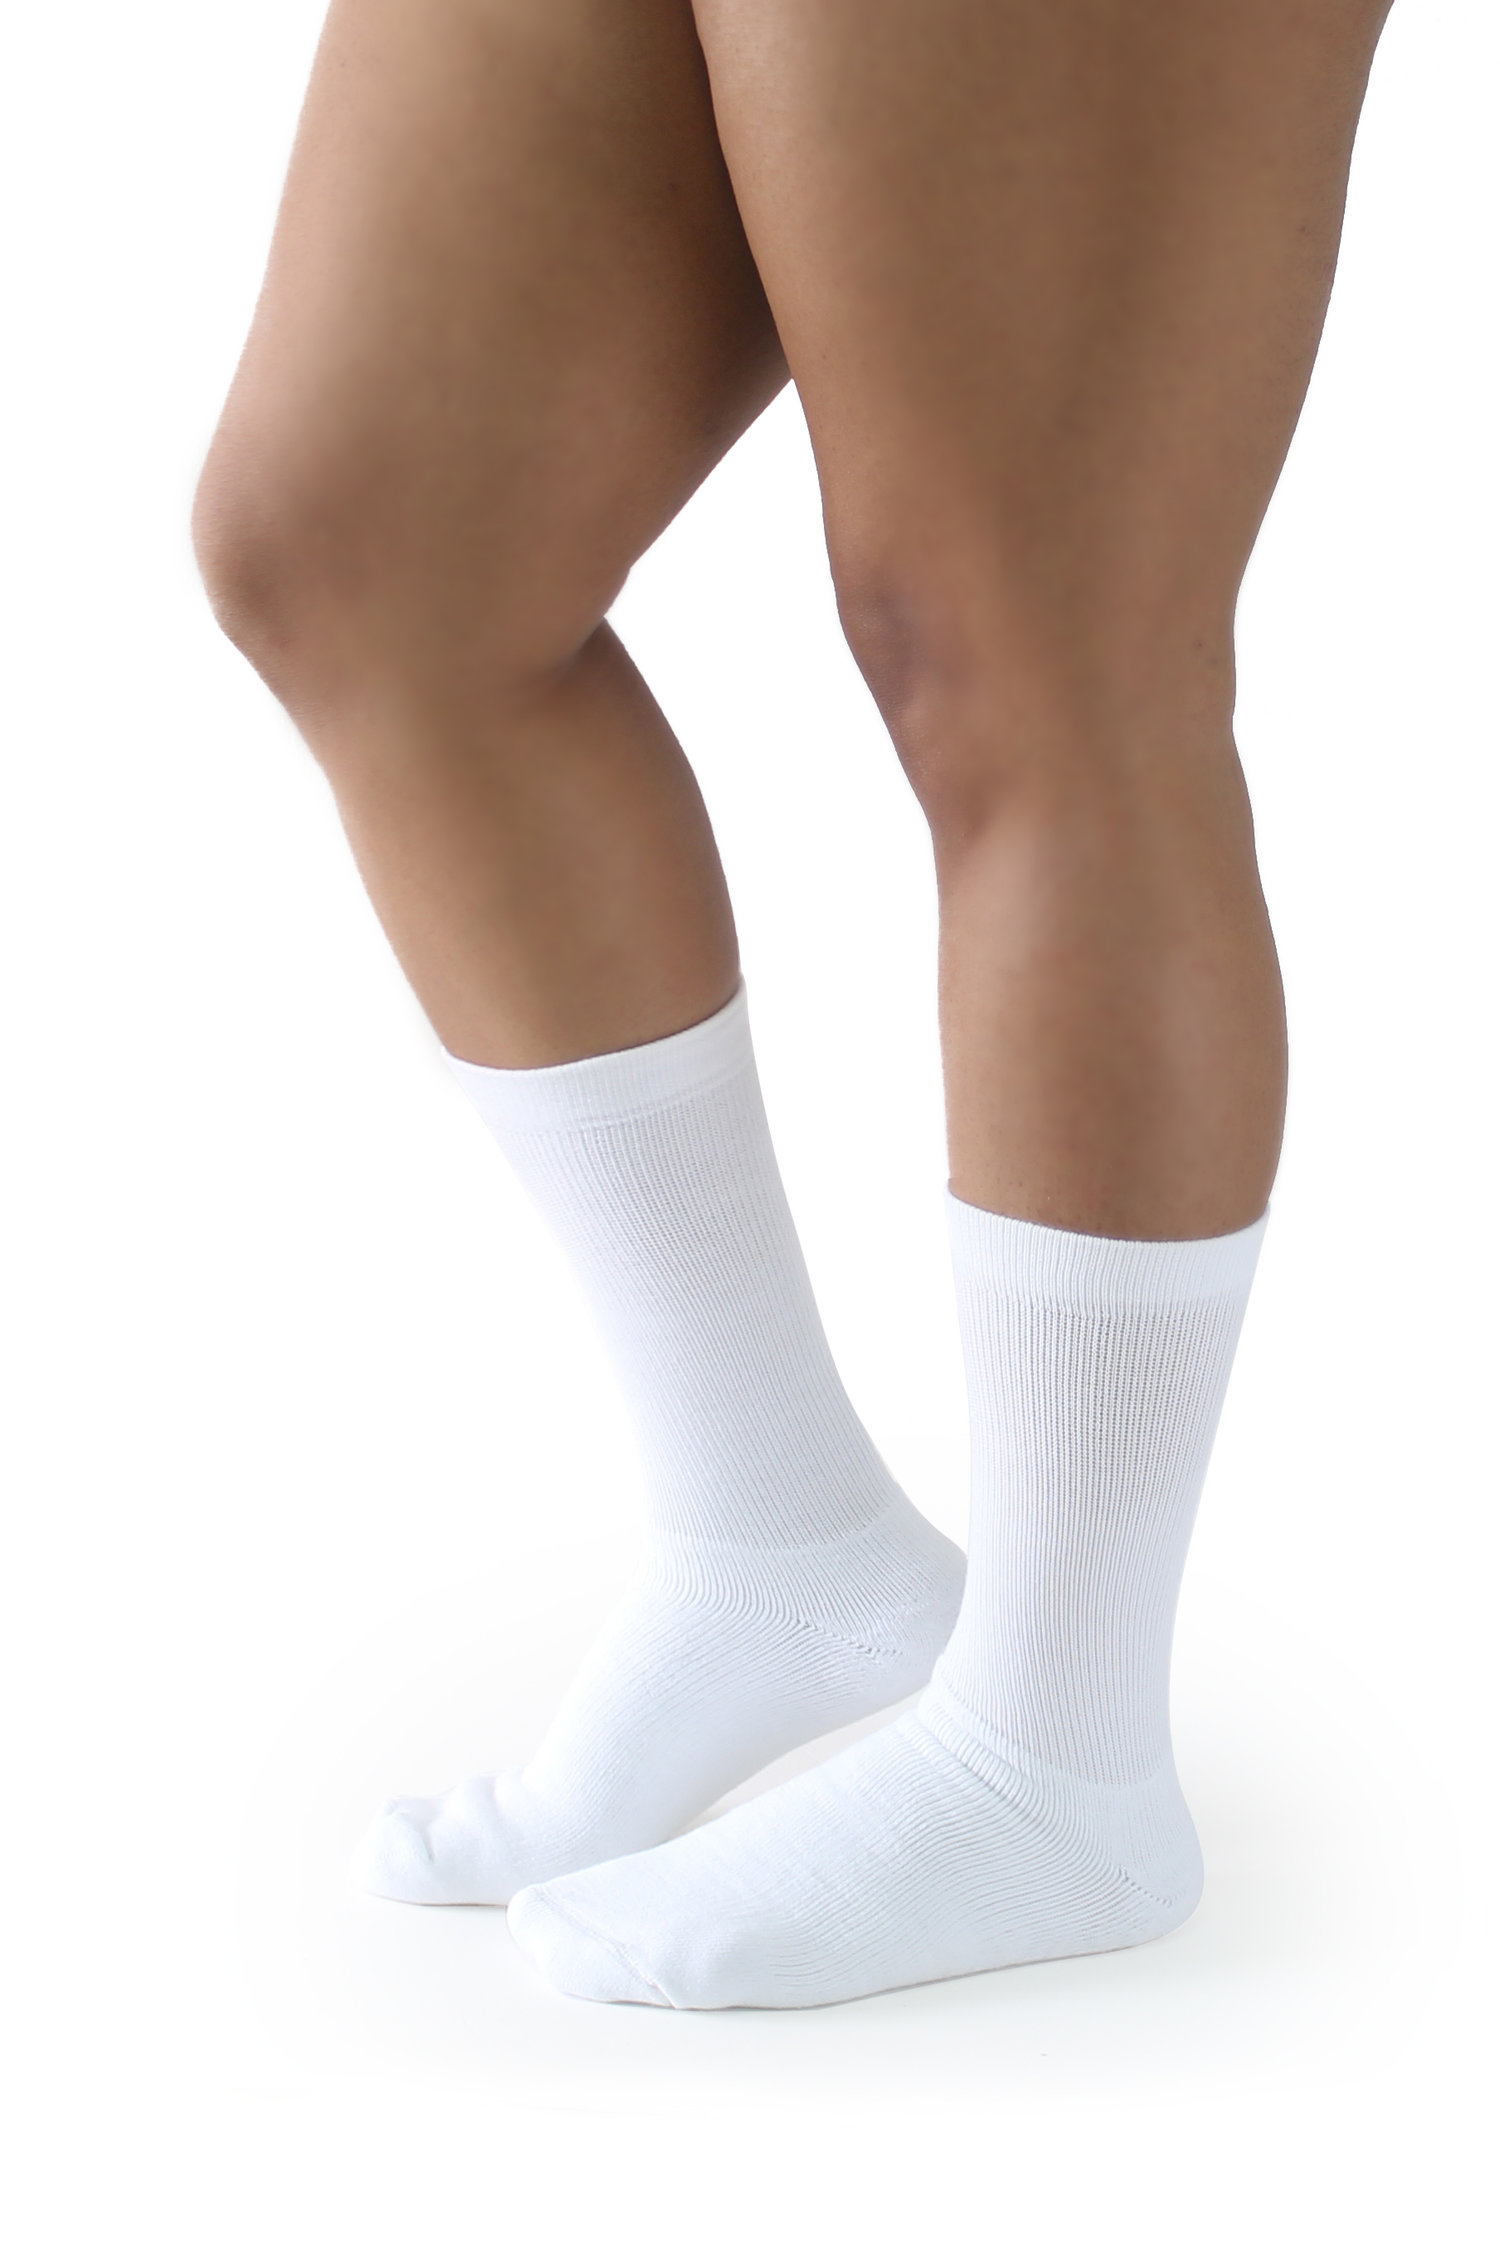 Lote de 2 calcetines de media pantorrilla blancos segunda piel para mujer